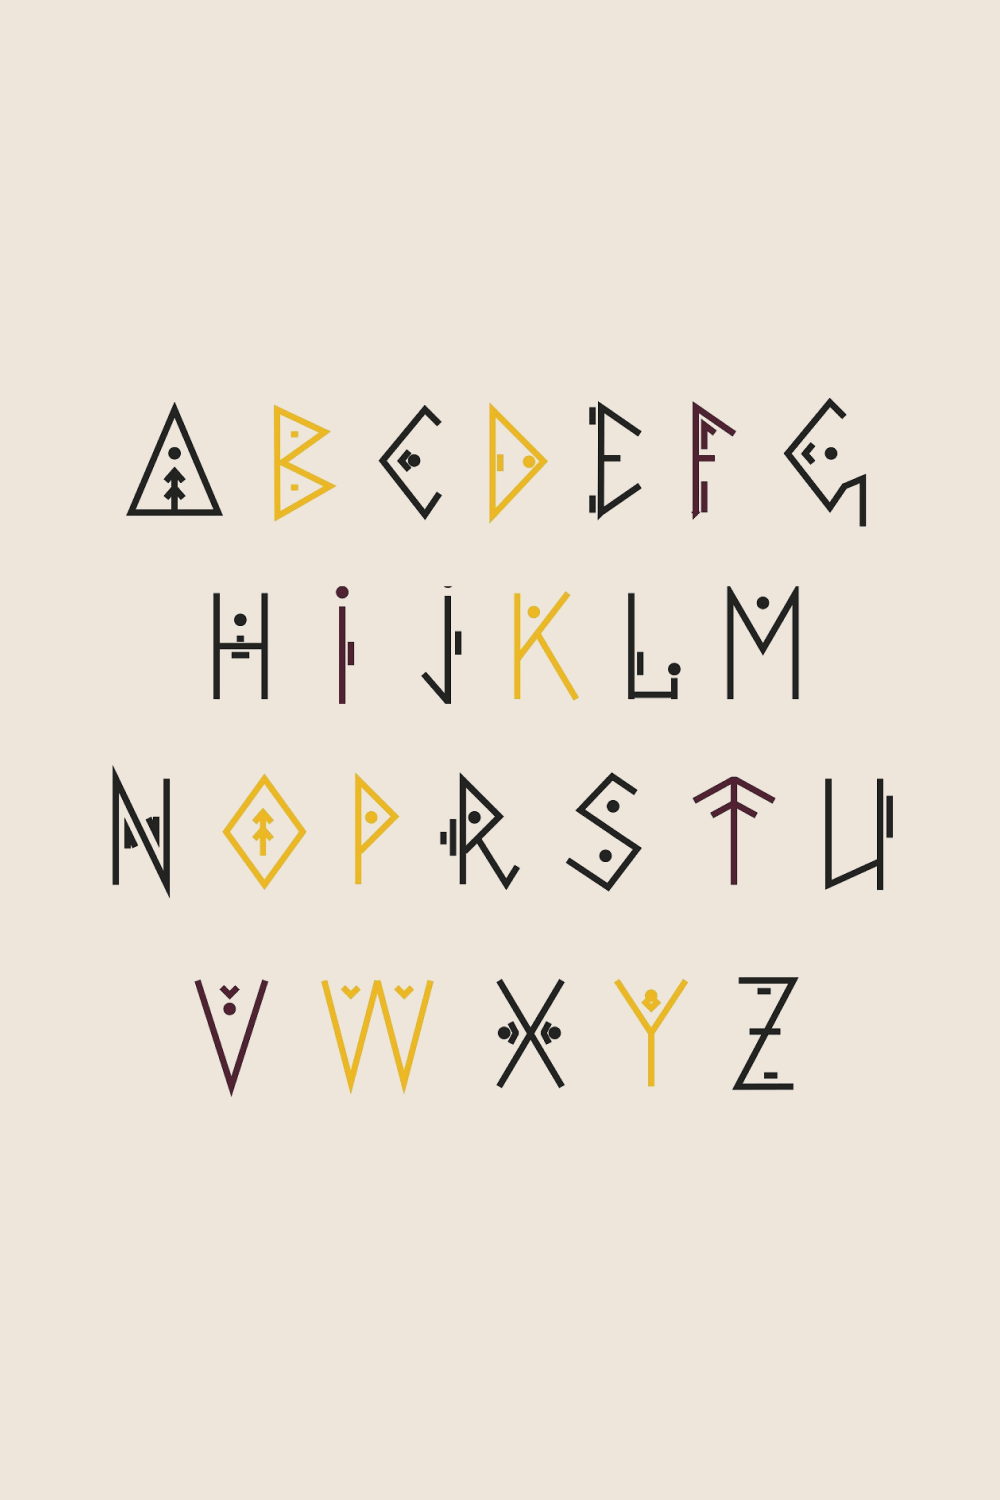 Various symbols as an alphabet.